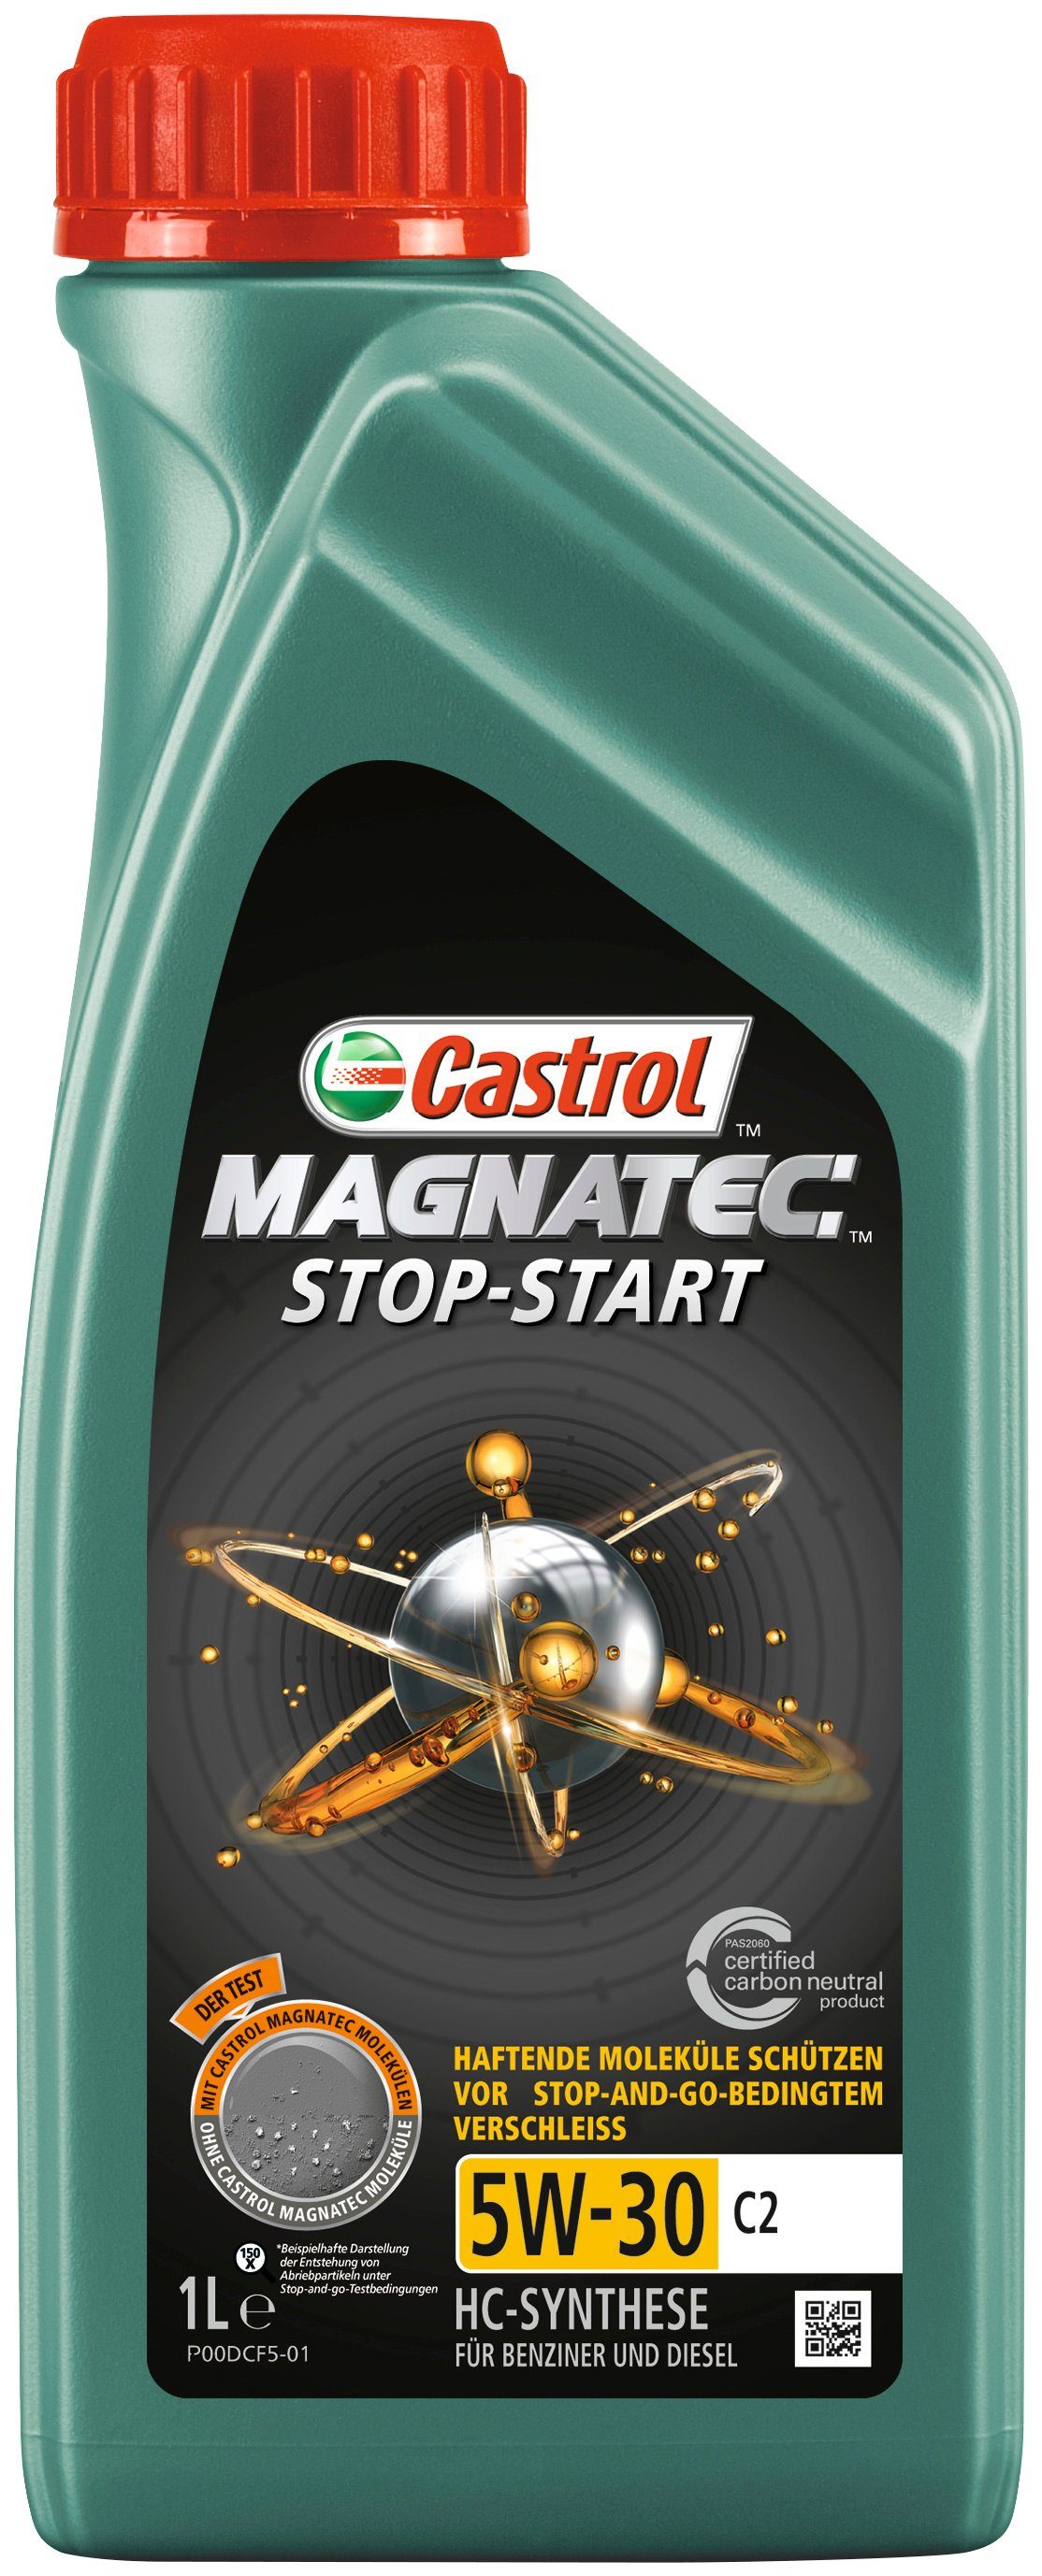 Castrol Motoröl MAGNATEC Stop-Start 5W-30 PKW für Liter, C2, 1